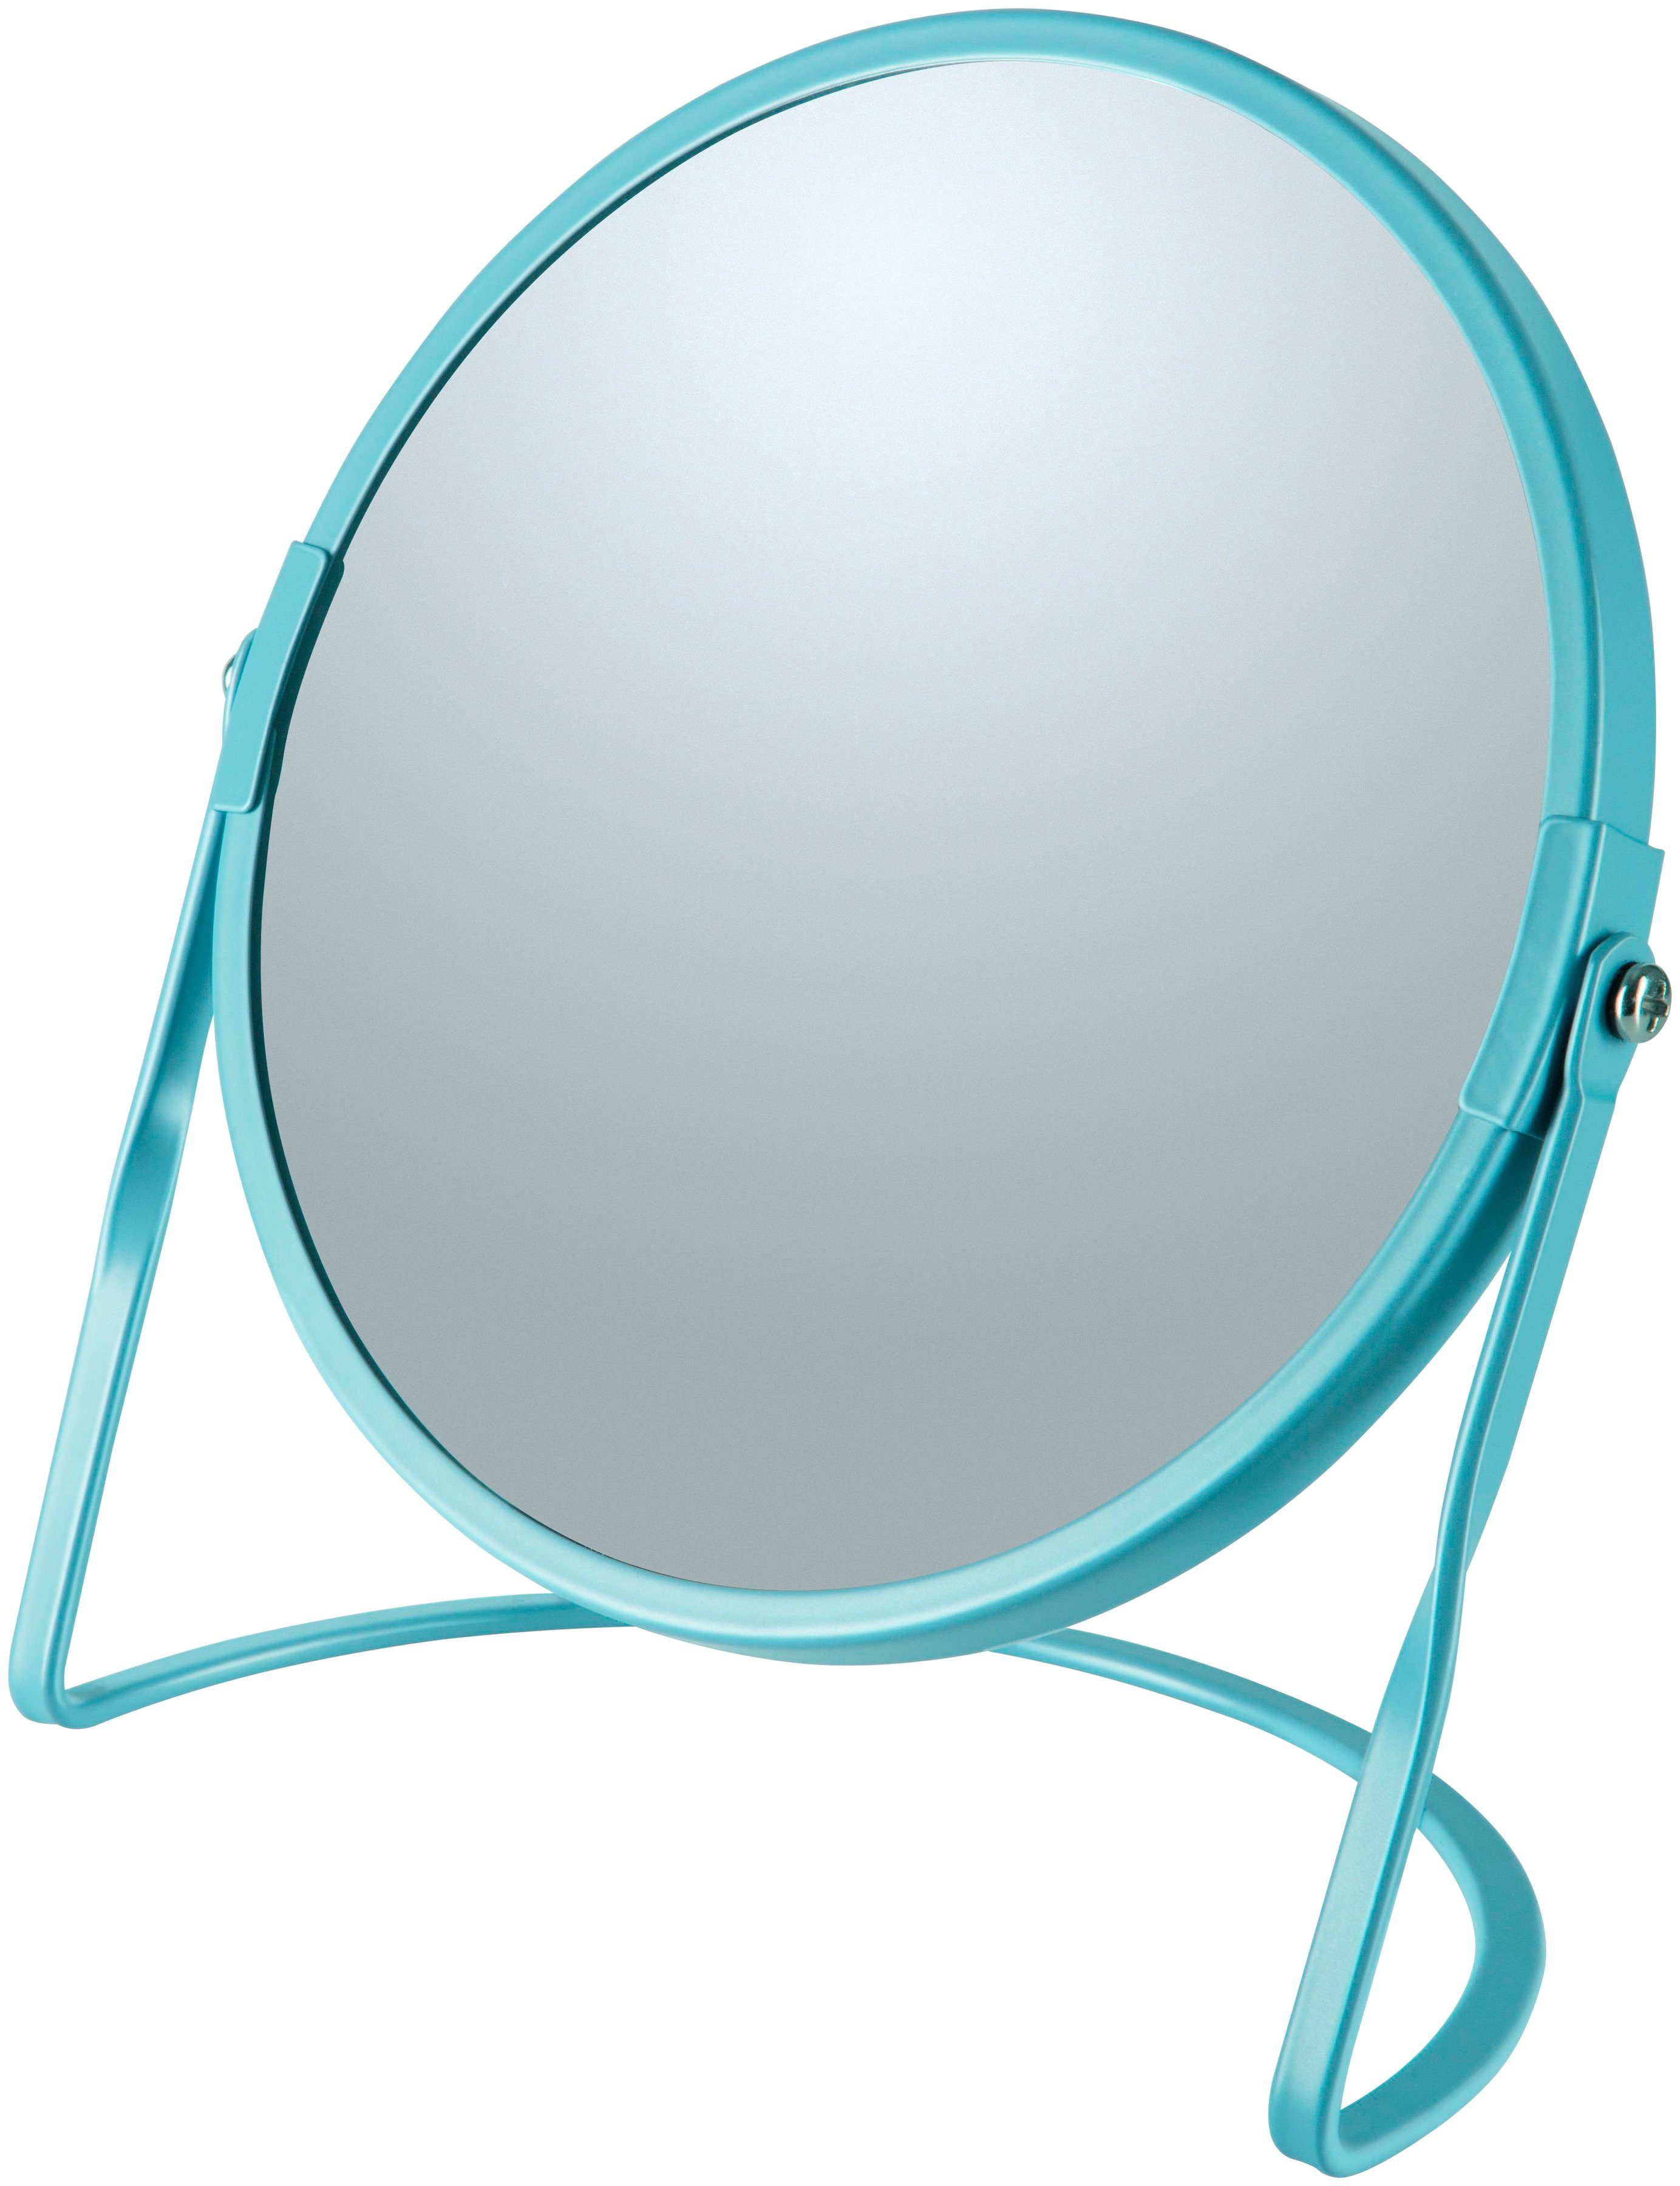 Kosmetikspiegel AKIRA, 5-fach Vergrößerung spirella hellblau